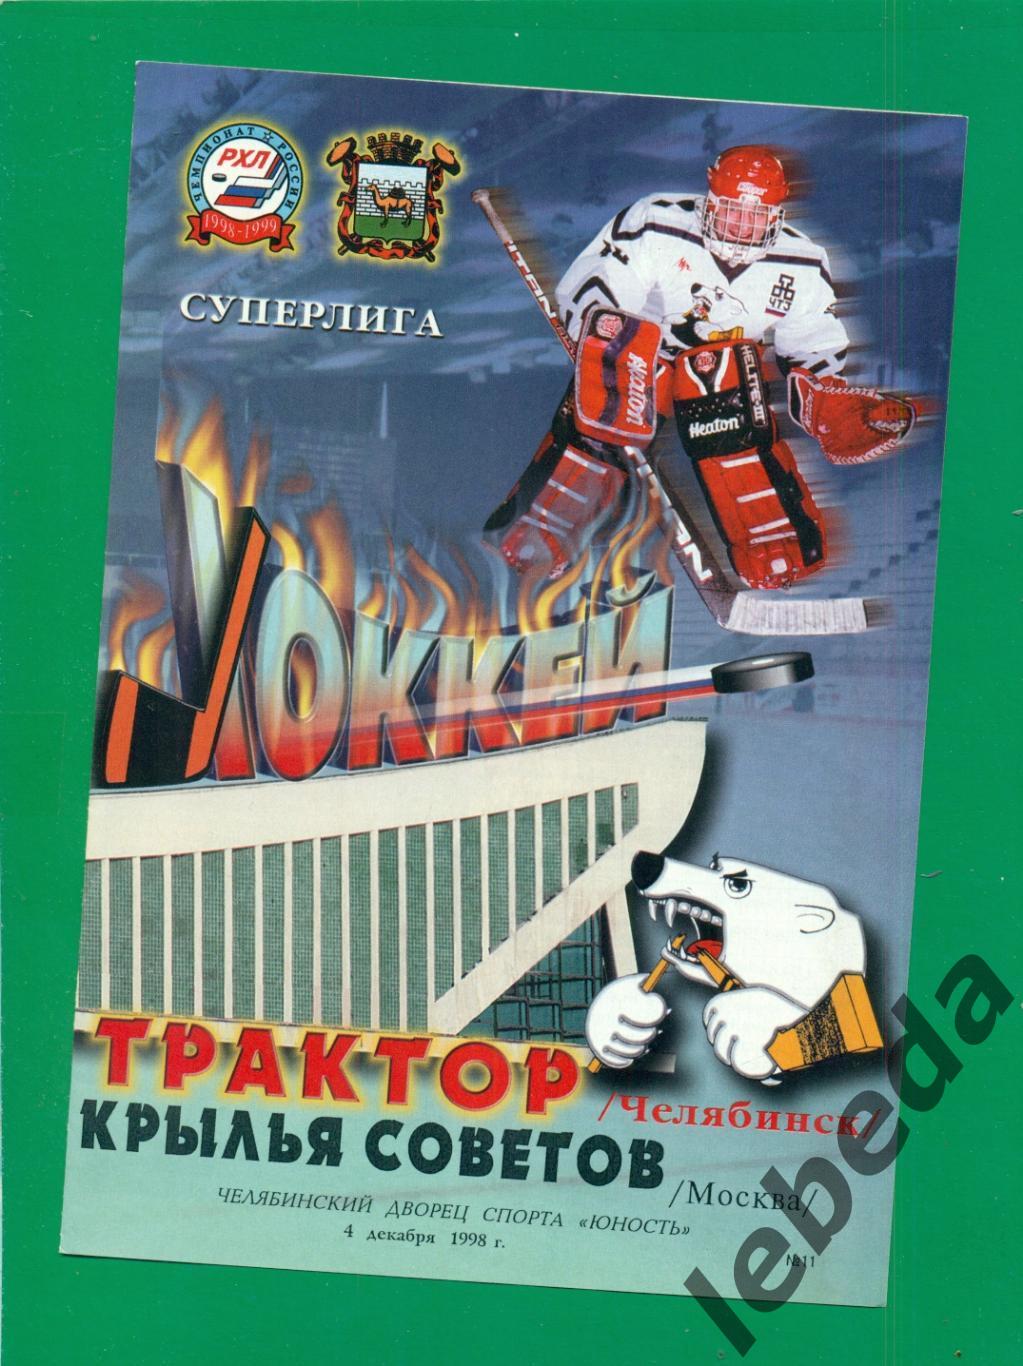 Трактор Челябинск - Крылья Советов Москва - 1998 / 1999 г. (04.12.1998.)